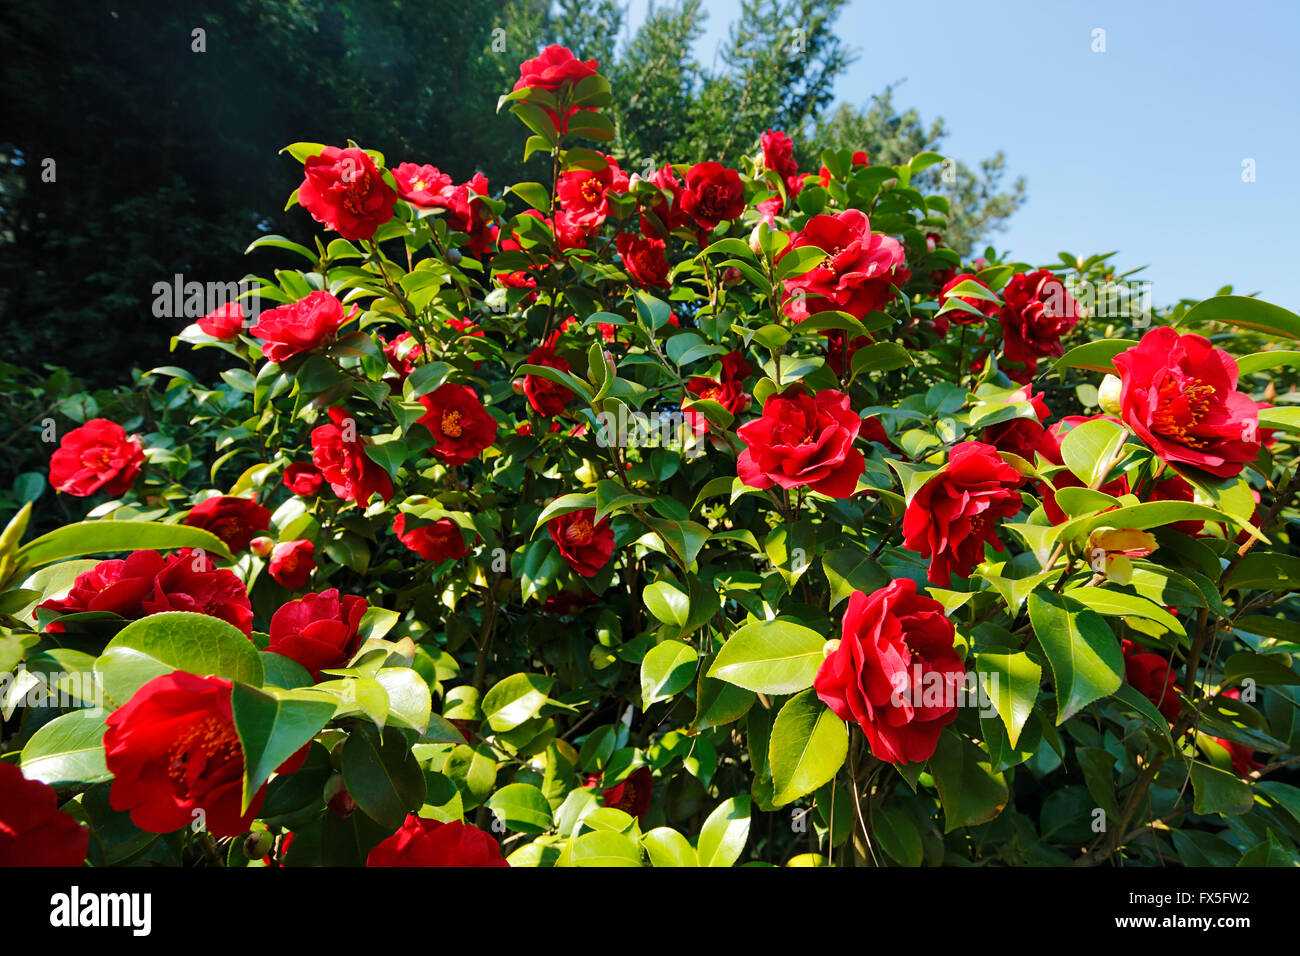 Natur, Jahreszeiten, Fruehling, Baum, Baumbluete, Strauch, rote Blueten, Kamelie, Camellia japonica Foto Stock